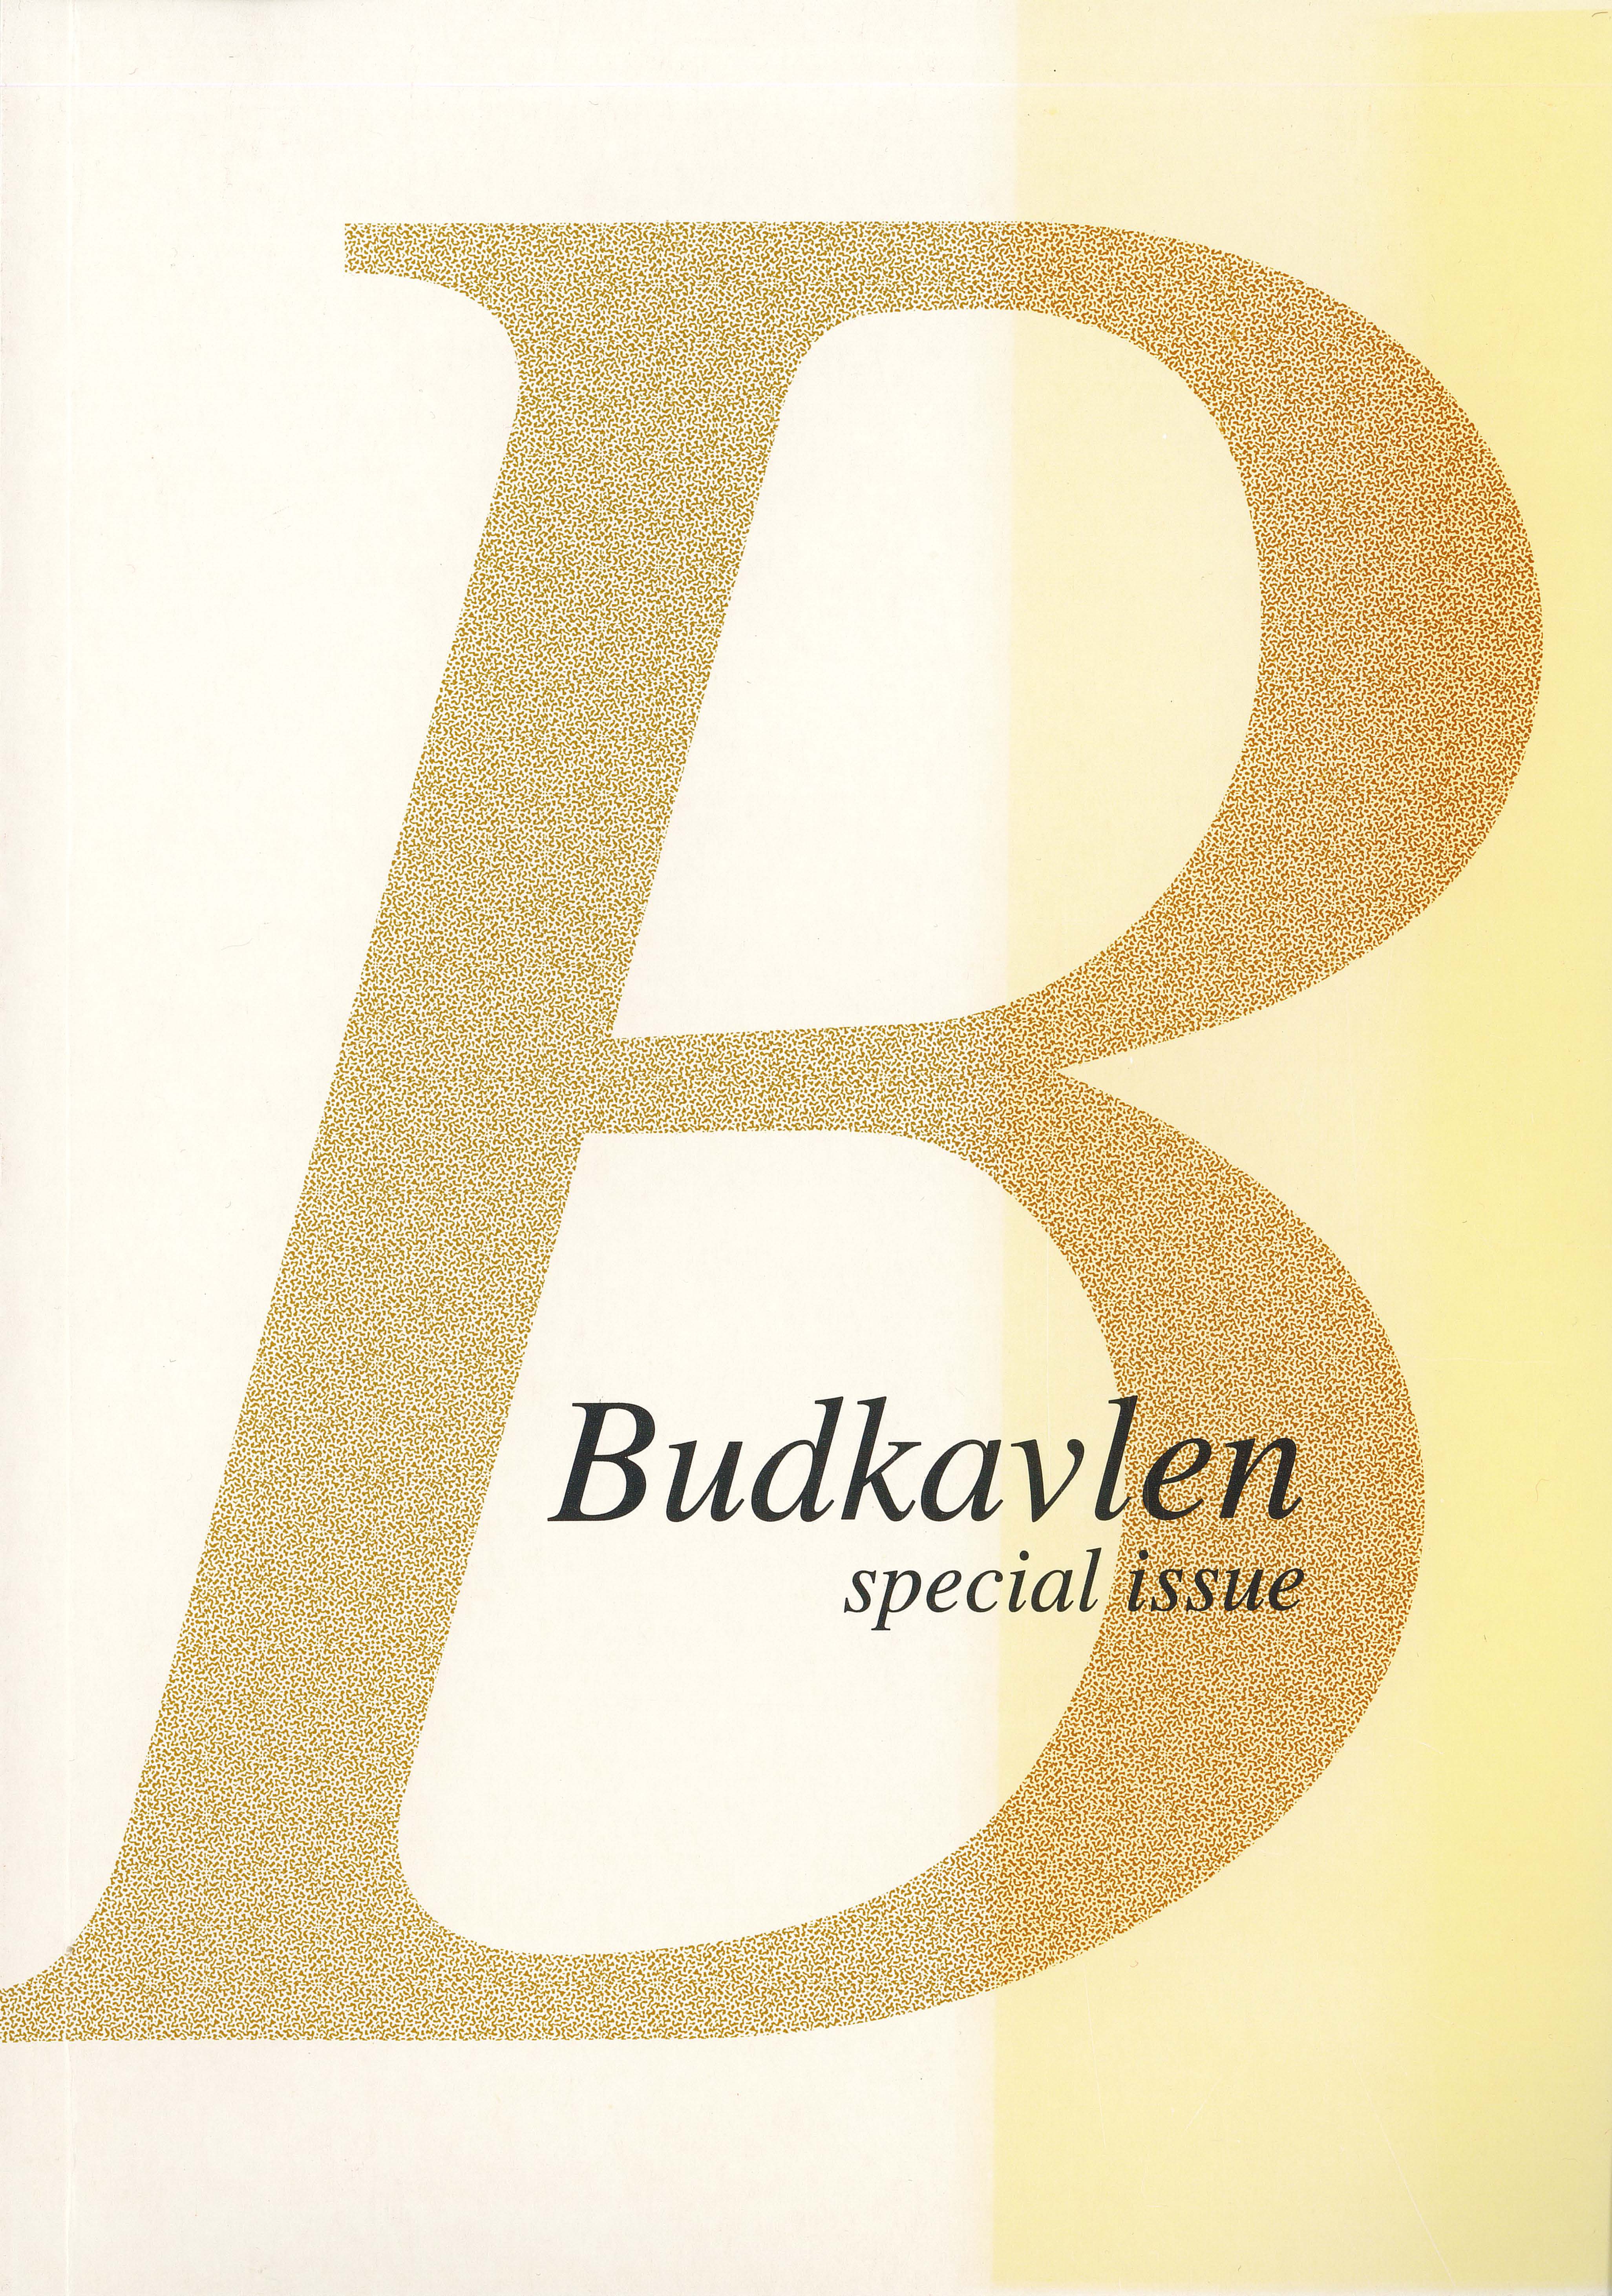 Pärmbild för Budkavlen 2005, special issue.